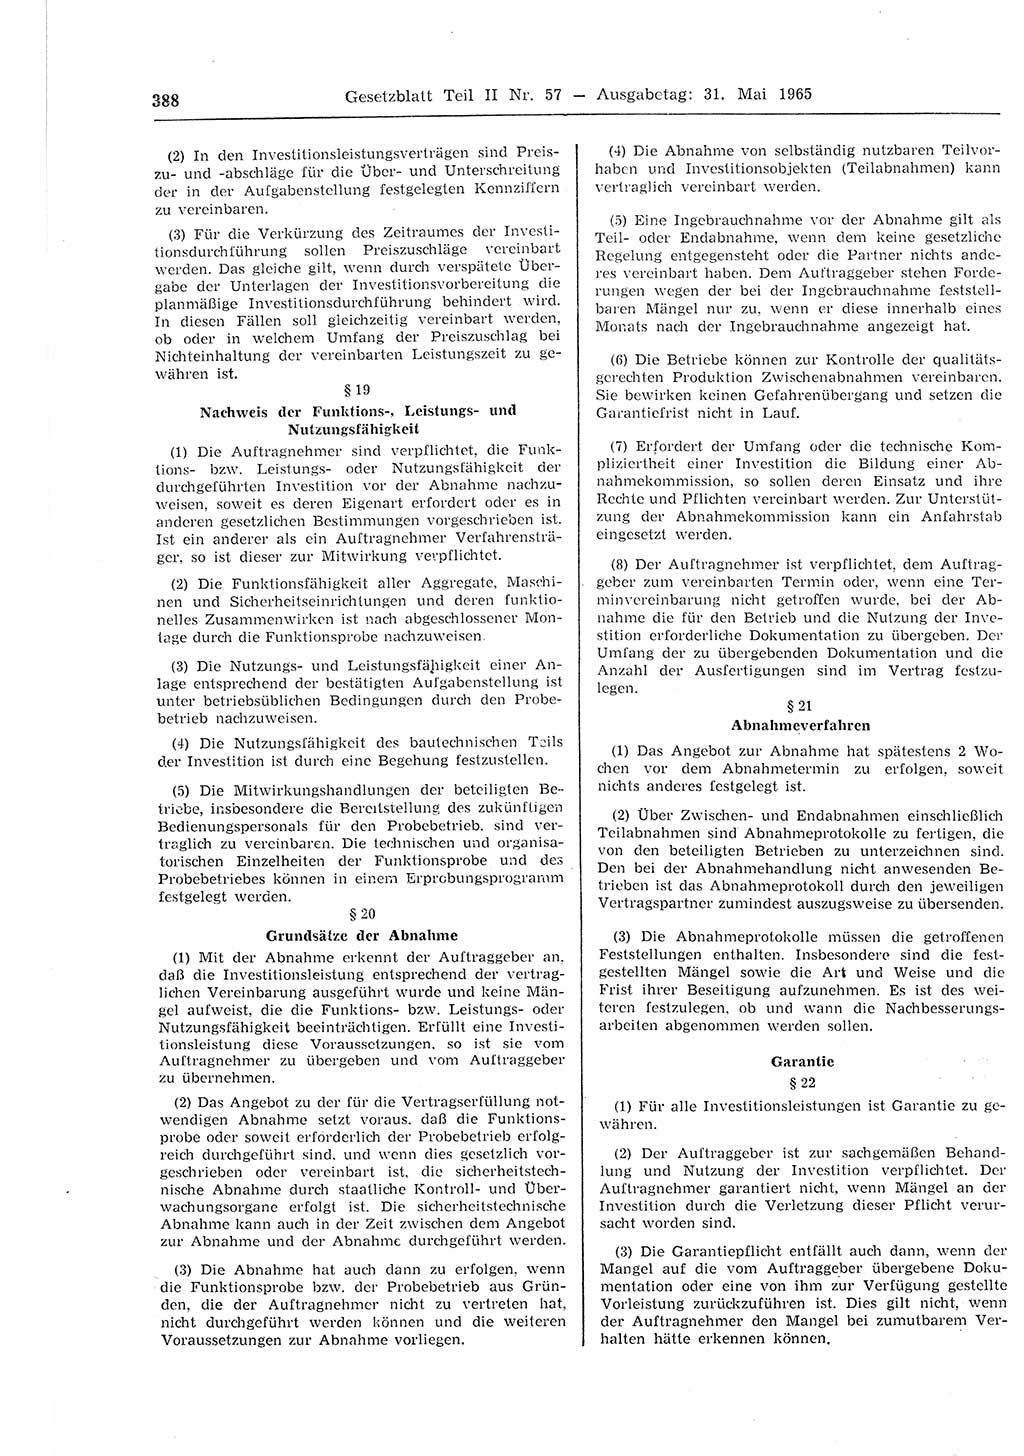 Gesetzblatt (GBl.) der Deutschen Demokratischen Republik (DDR) Teil ⅠⅠ 1965, Seite 388 (GBl. DDR ⅠⅠ 1965, S. 388)